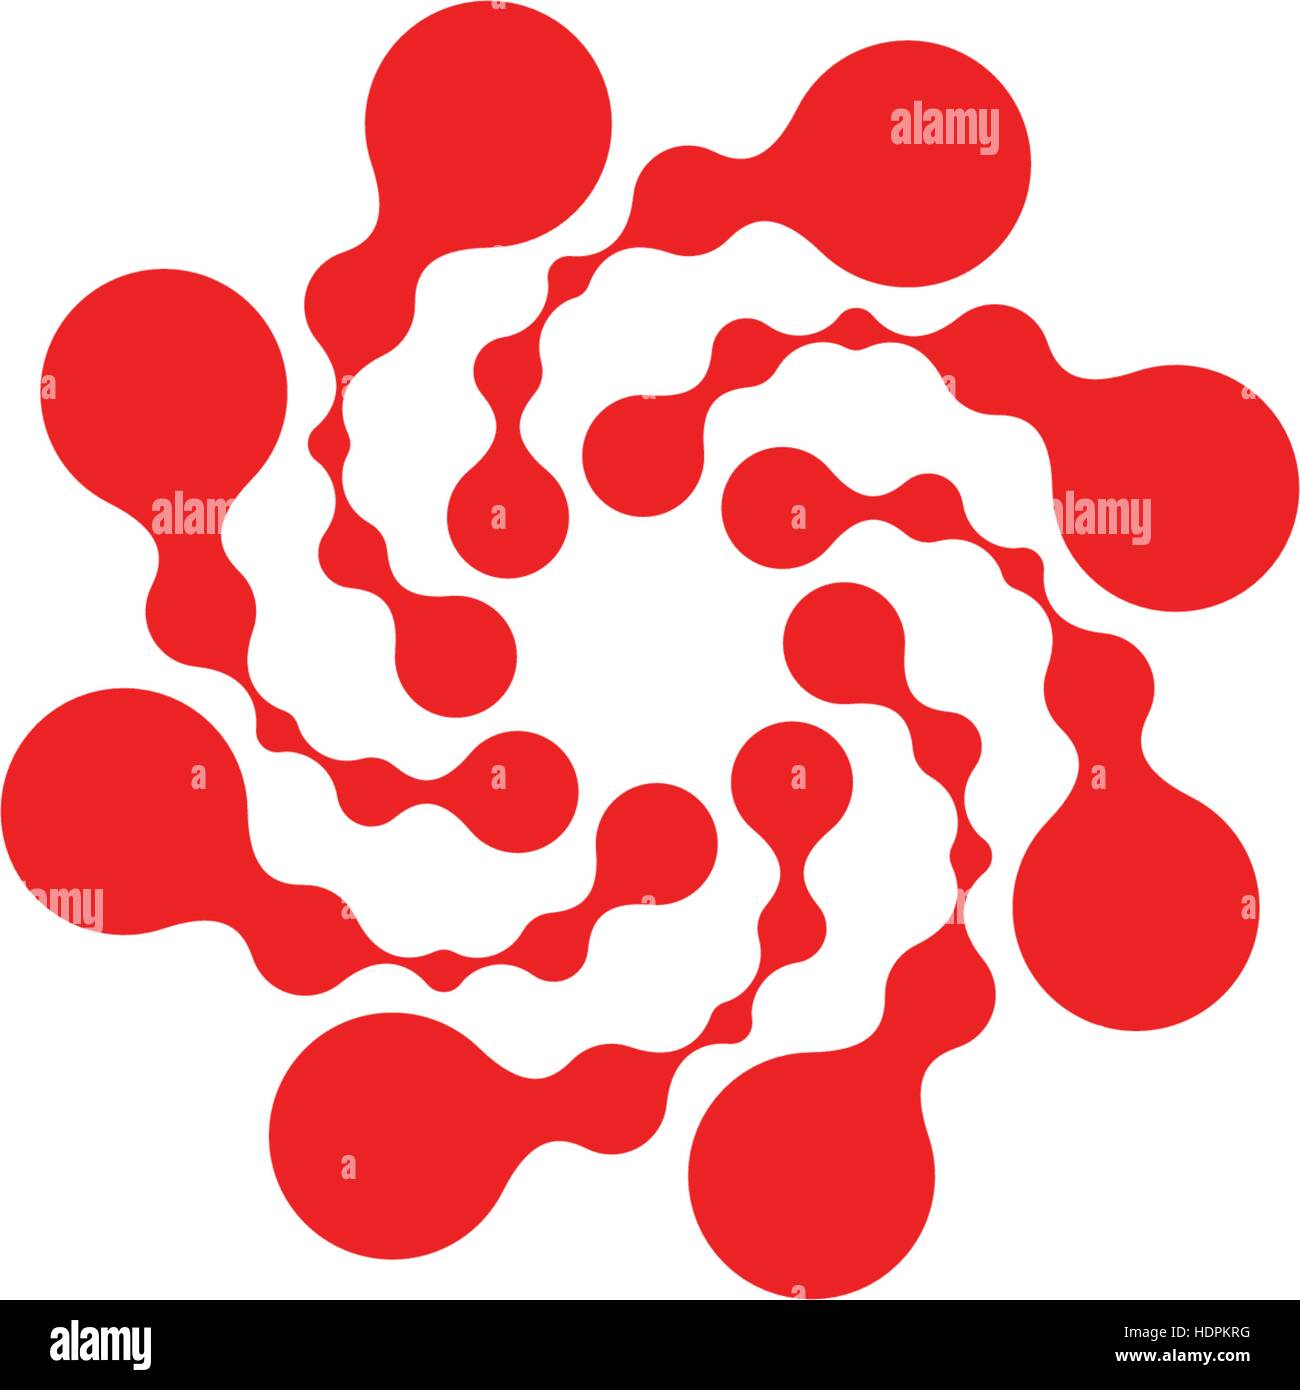 Abstrakt Kreis Logo. Ungewöhnliche gepunktete Runde isolierte Chem Logo. Virus-Symbol. Rote Sonne. Symbolblume. Spiral-Zeichen. Vektorgrafik Keime. Stock Vektor